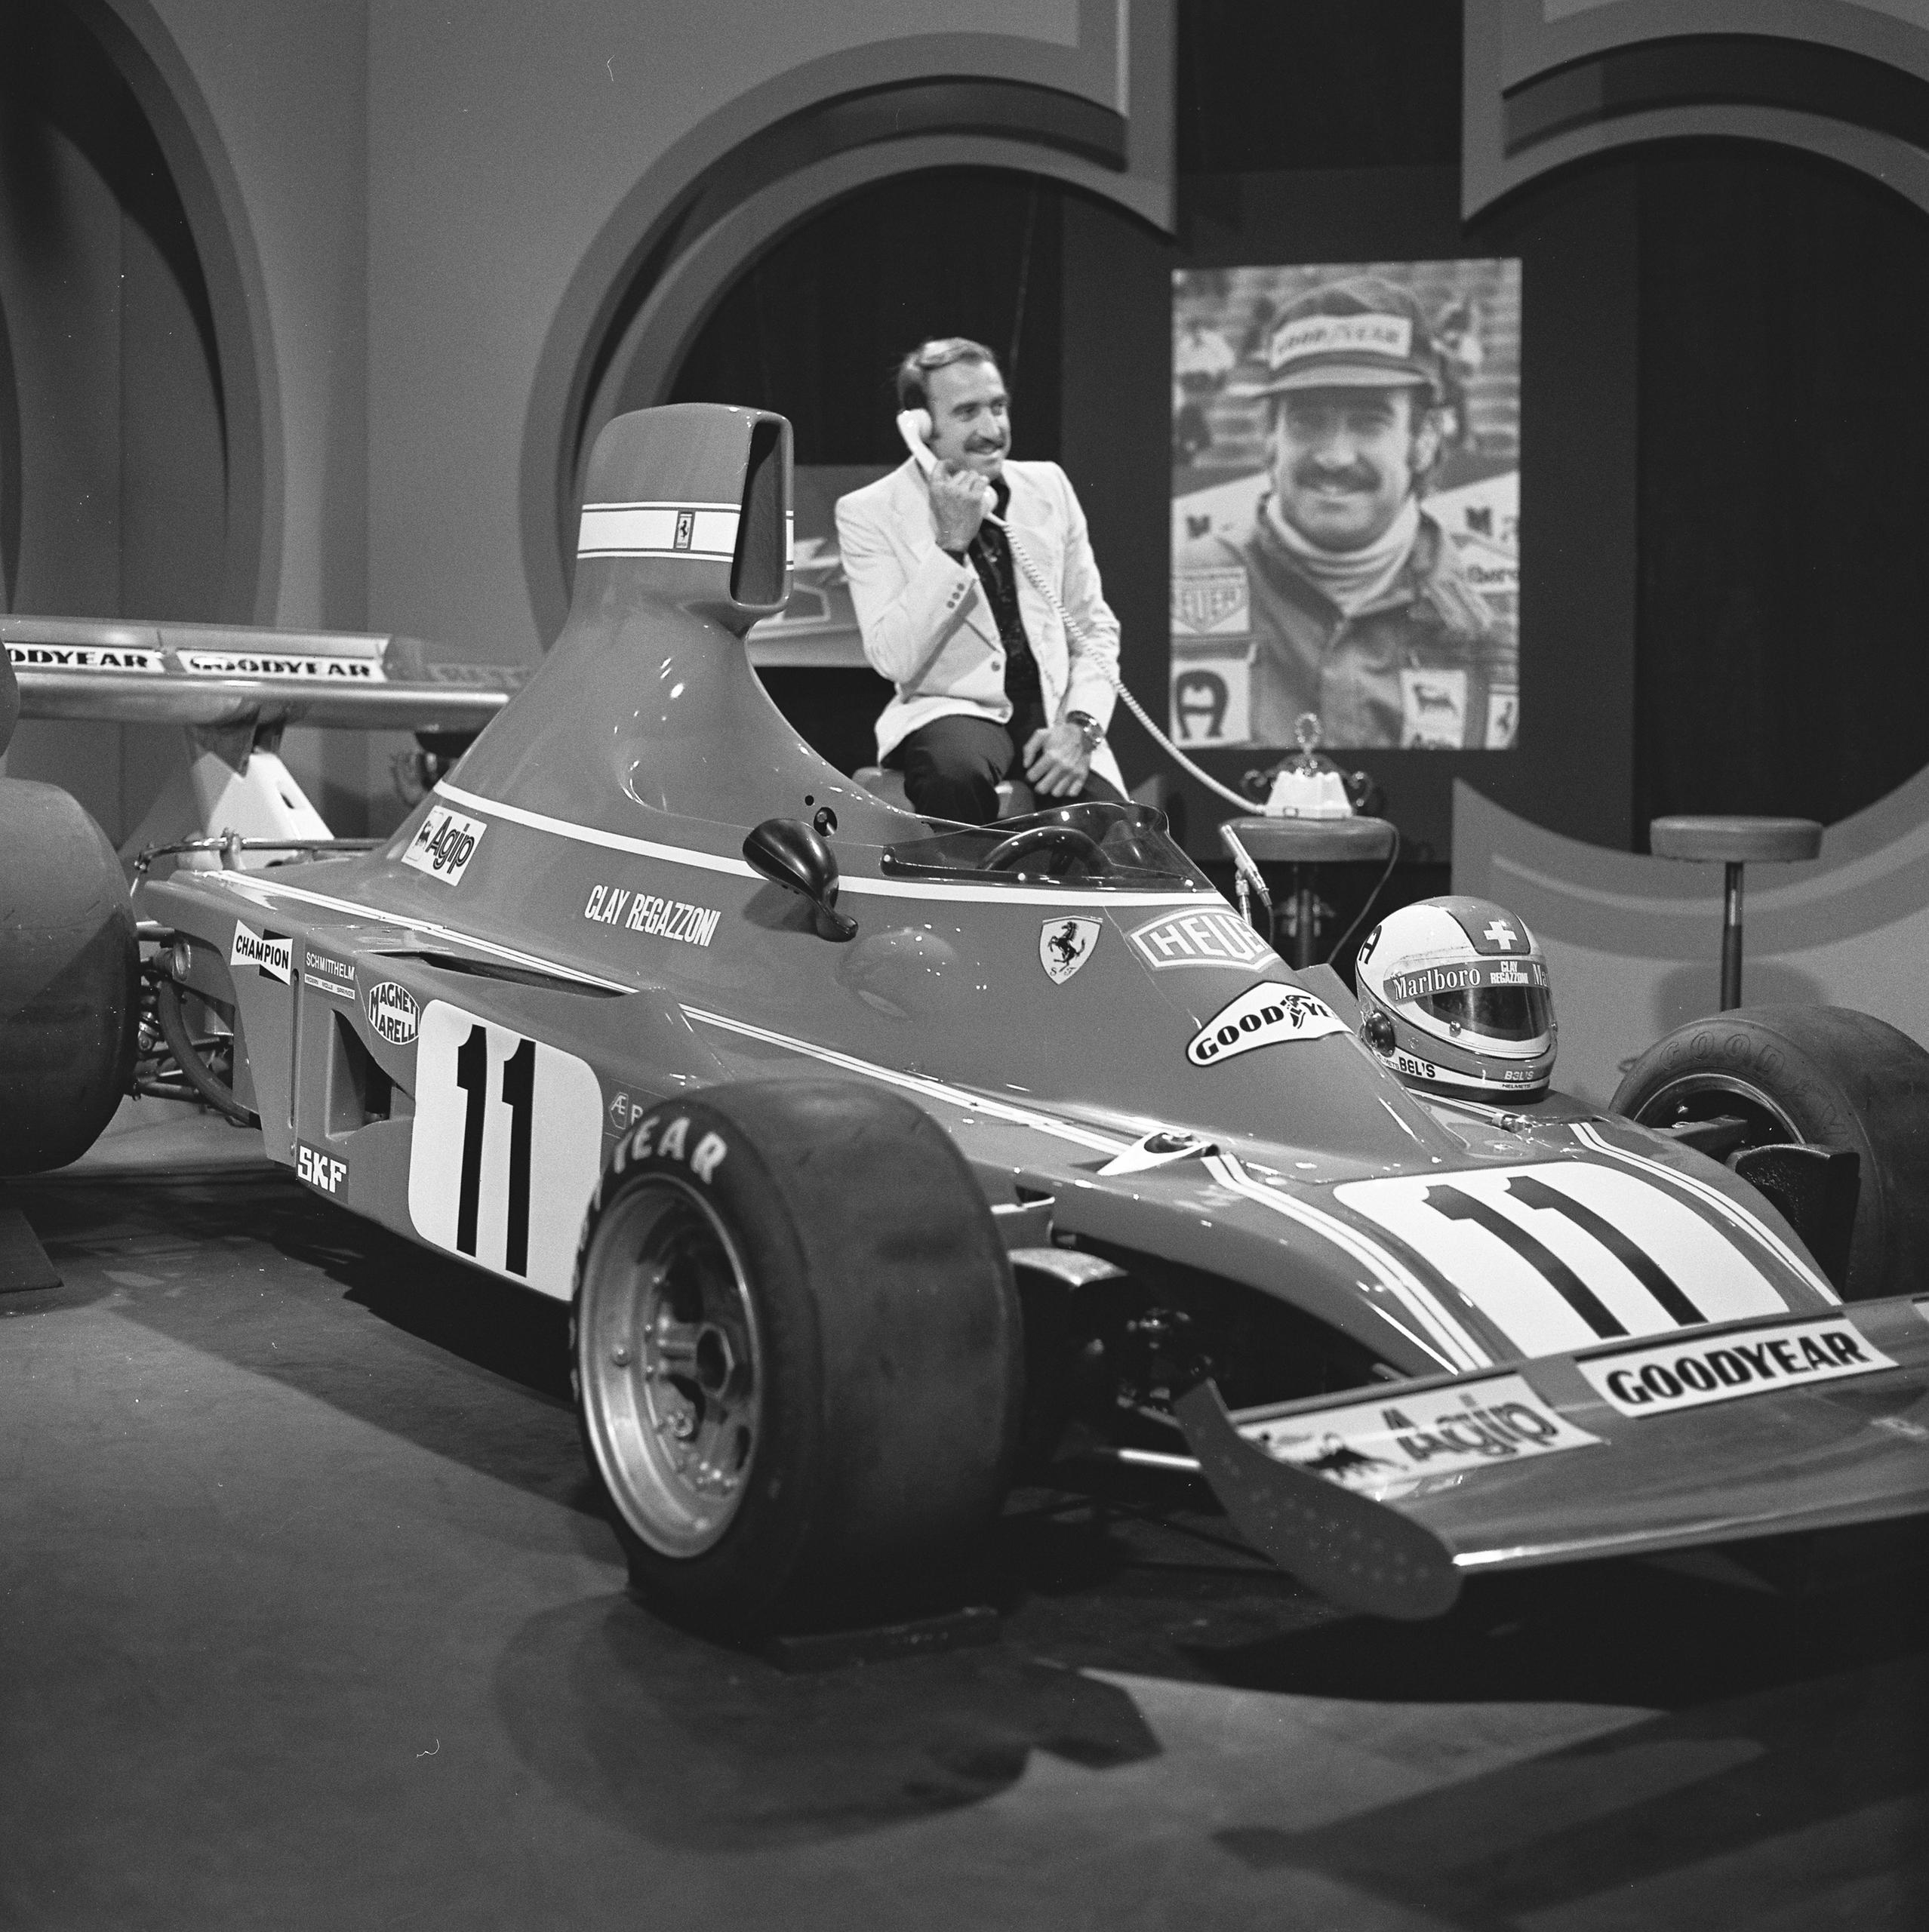 Regazzoni sedutosul bordo dell abitacolo di una monoposto parla al telefono